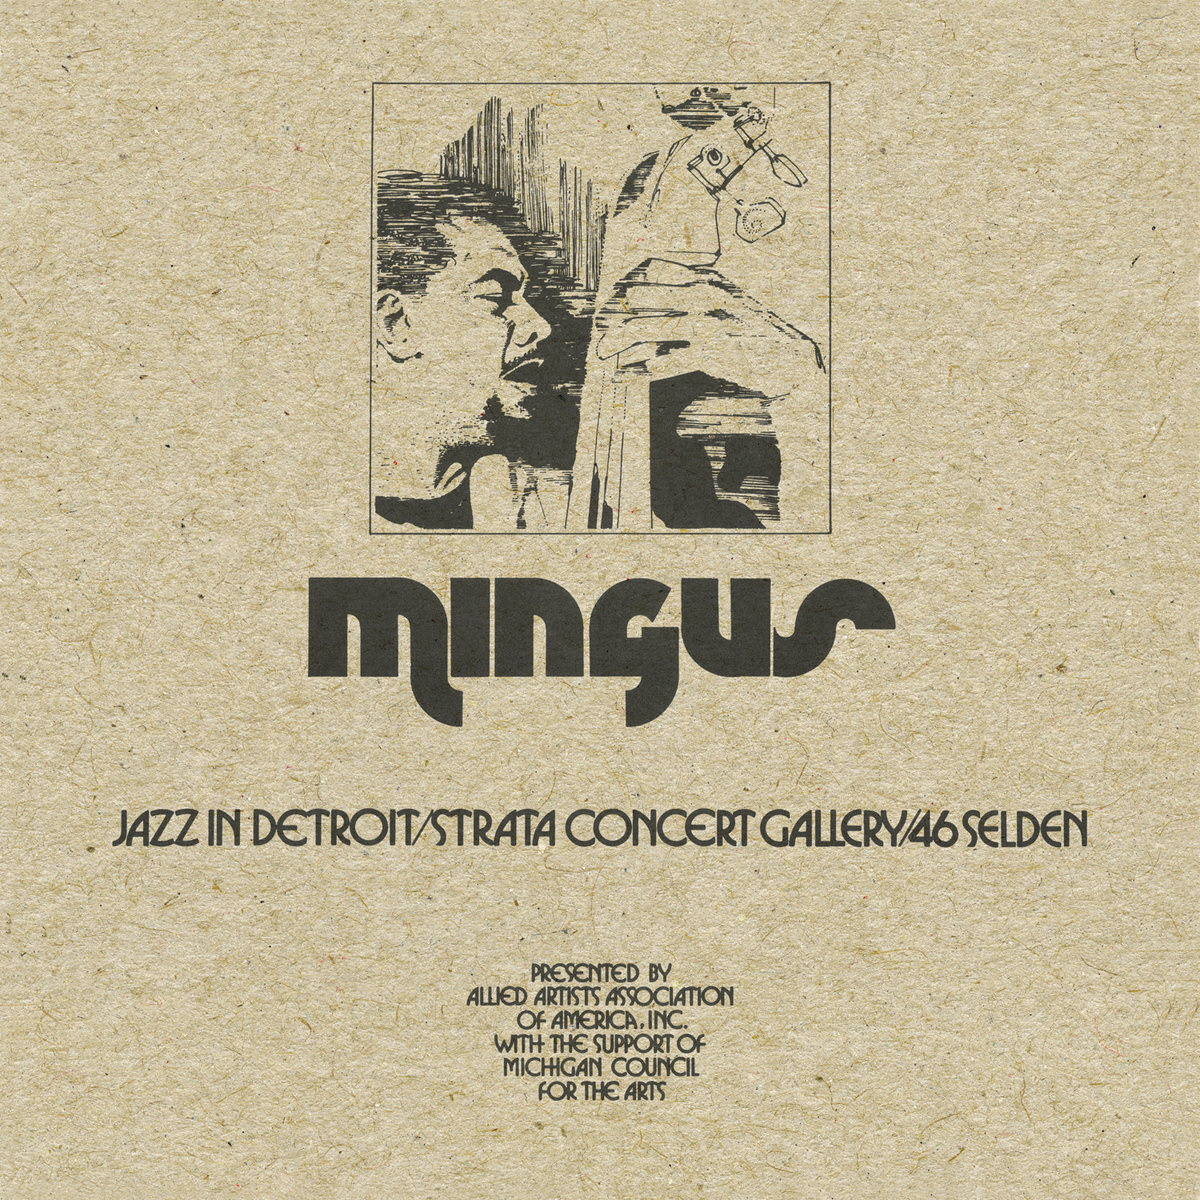 Mingus Jazz in Detroit/Strata Concert